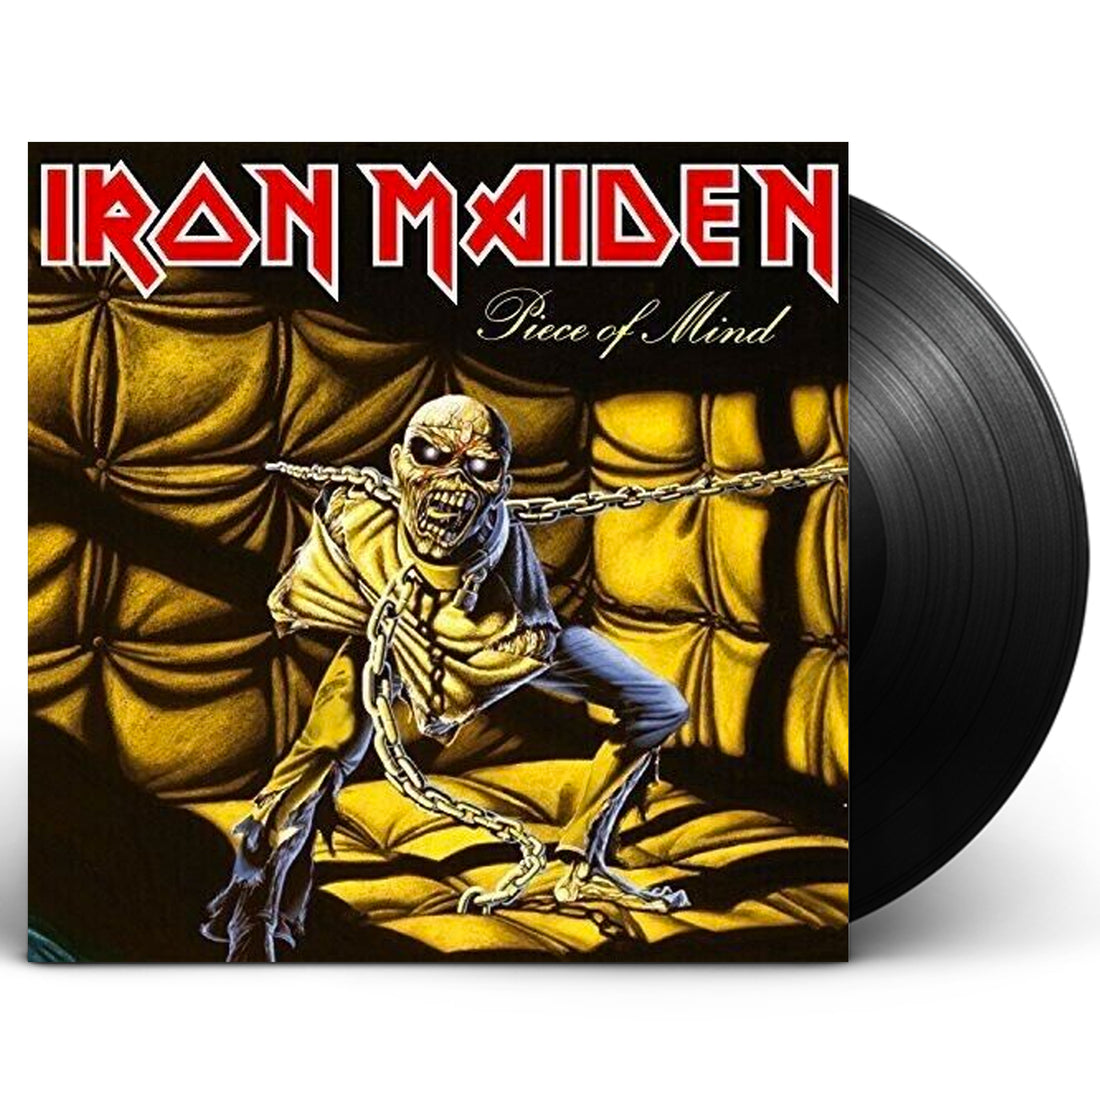 Iron Maiden "Piece of Mind" LP Vinyl